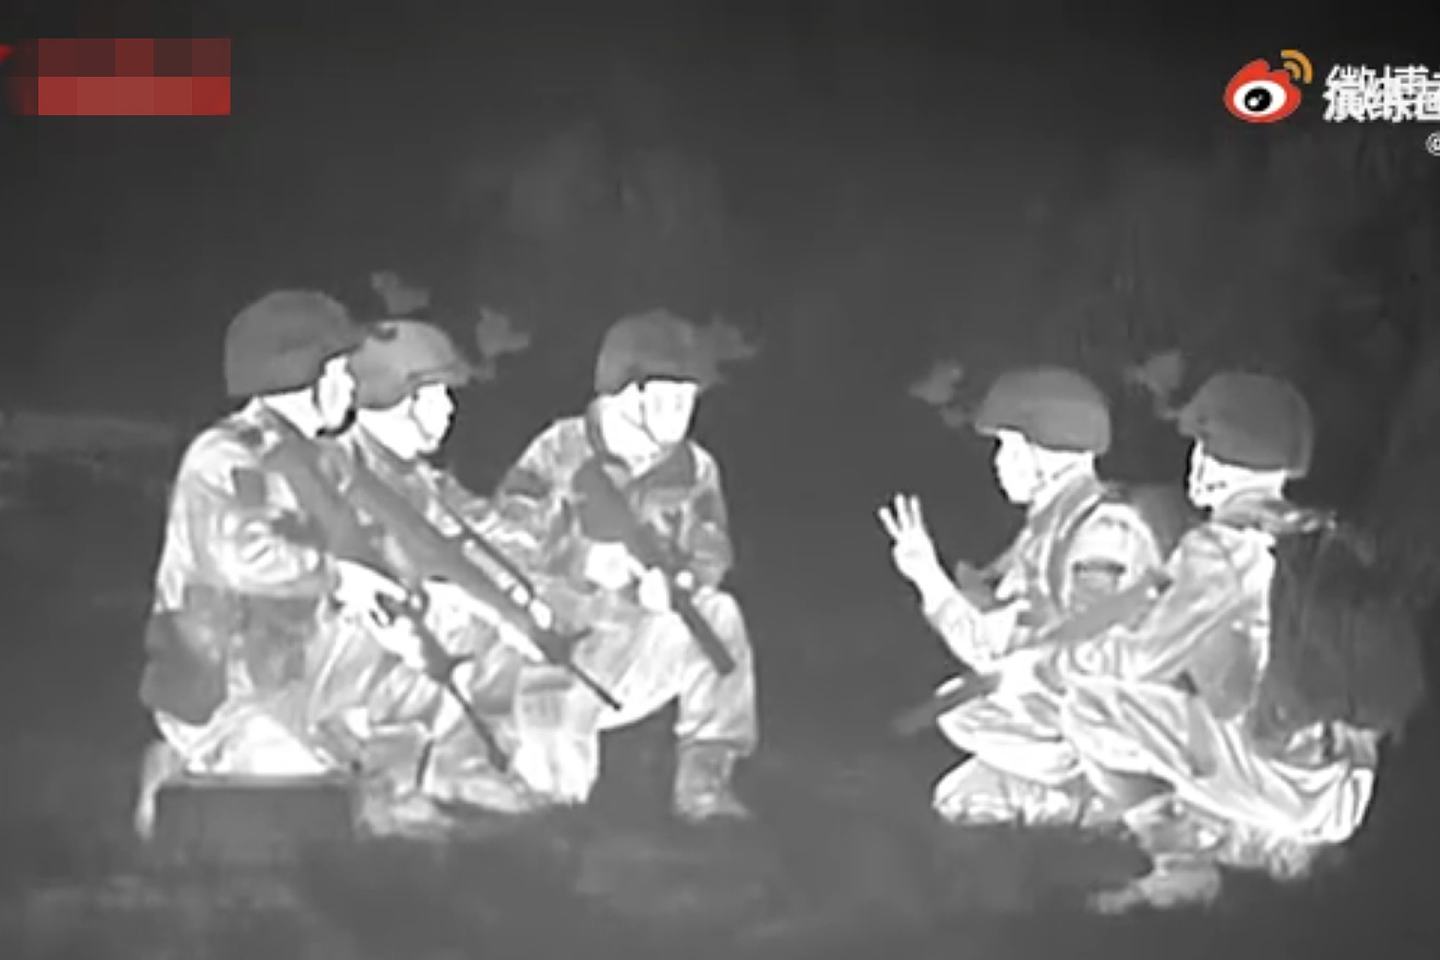 解放军第73集团军在福建进行破袭演练。此次演练持续到深夜。（中国军视网视频截图）